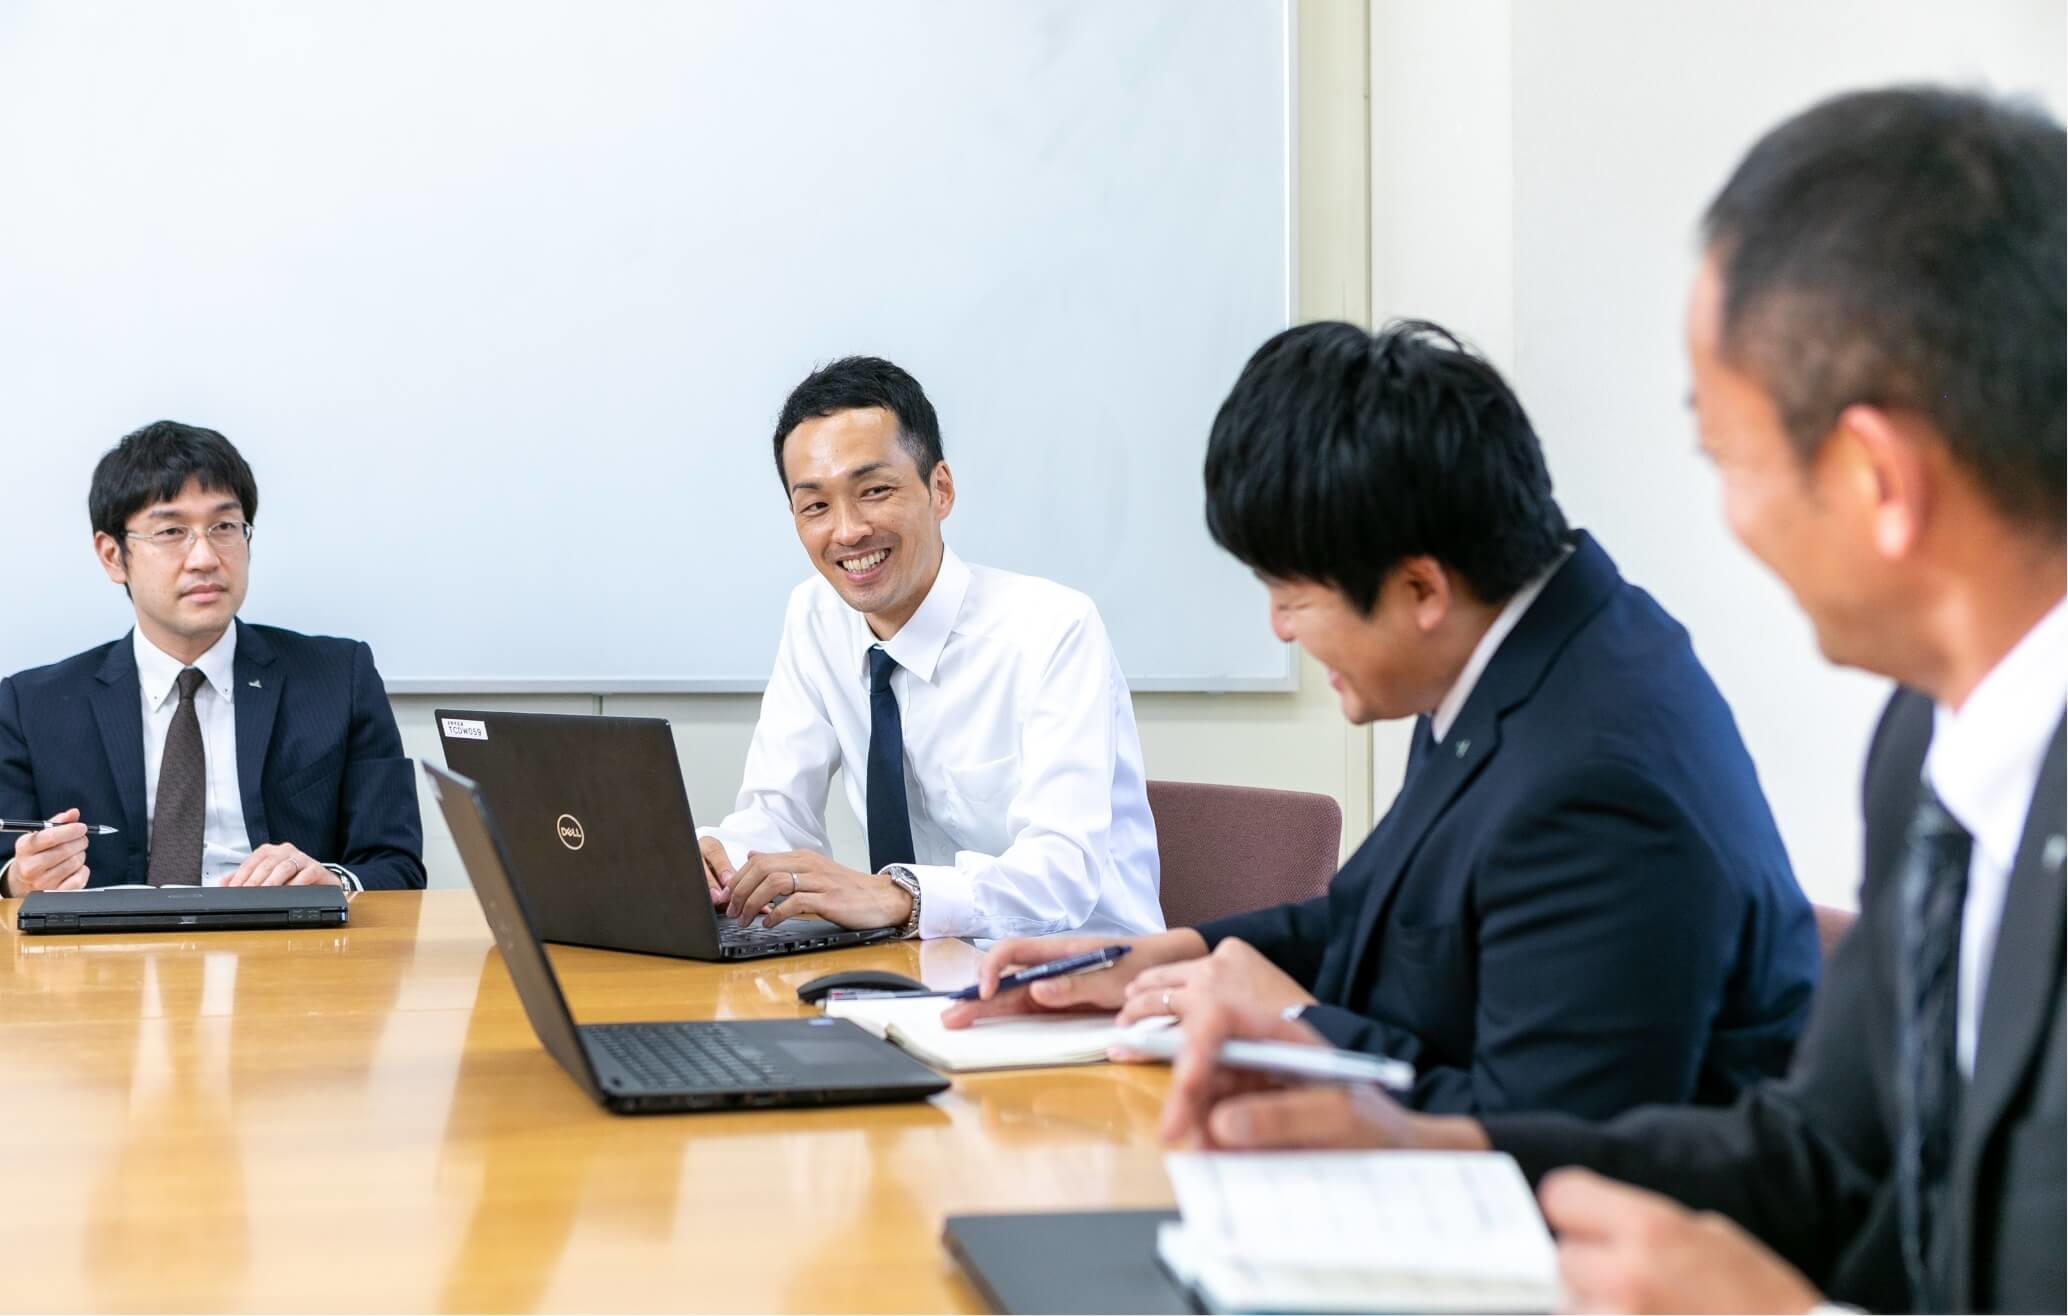 デスクを囲み、パソコンをみながら月時会議をしている長野県信連の男性職員4名